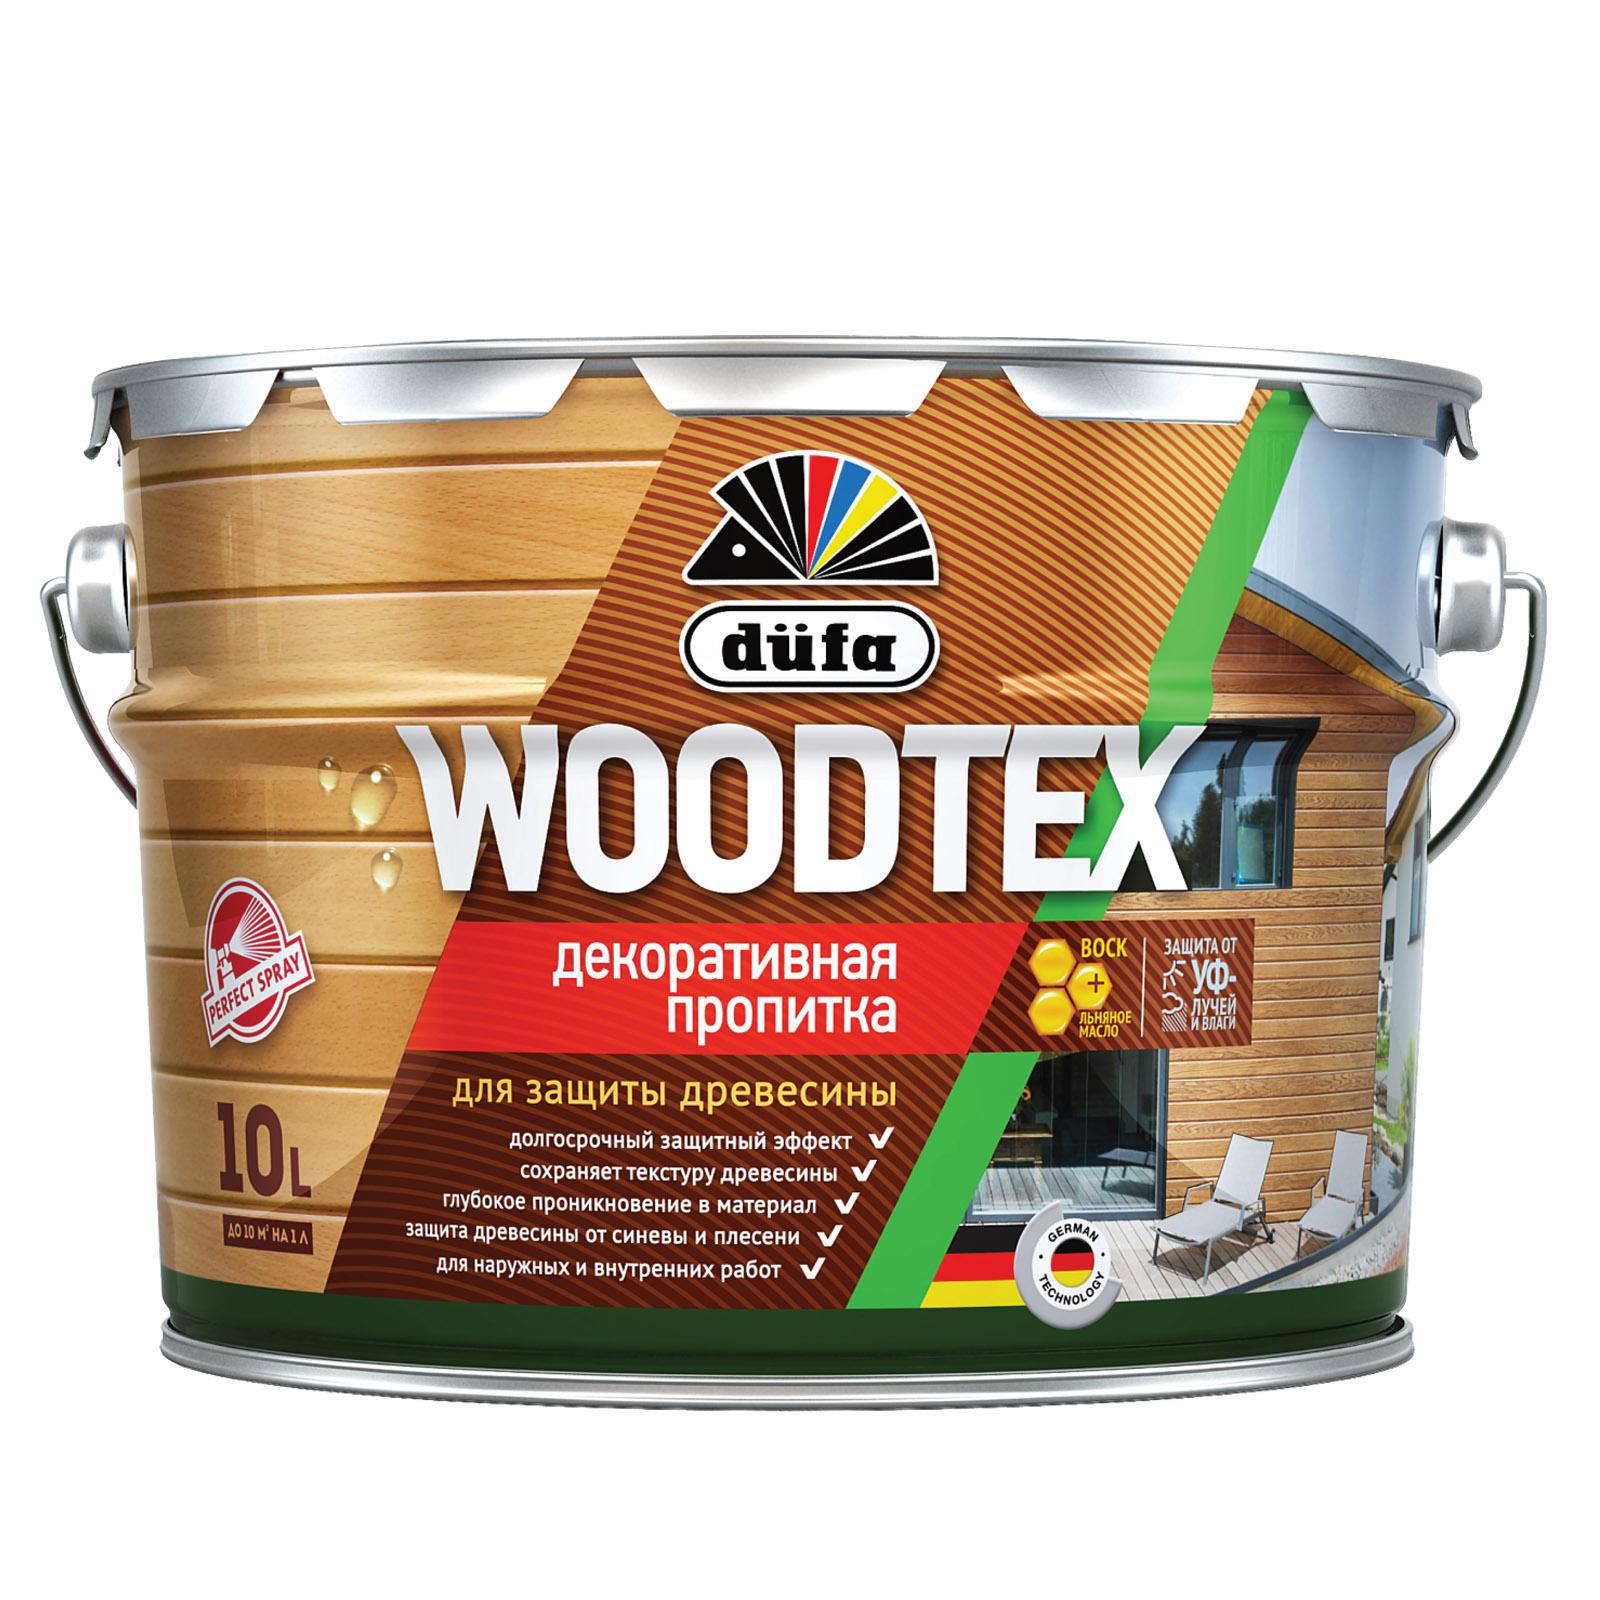 90194545 Пропитка декоративная для защиты древесины алкидная Woodtex сосна 10 л STLM-0128477 DUFA